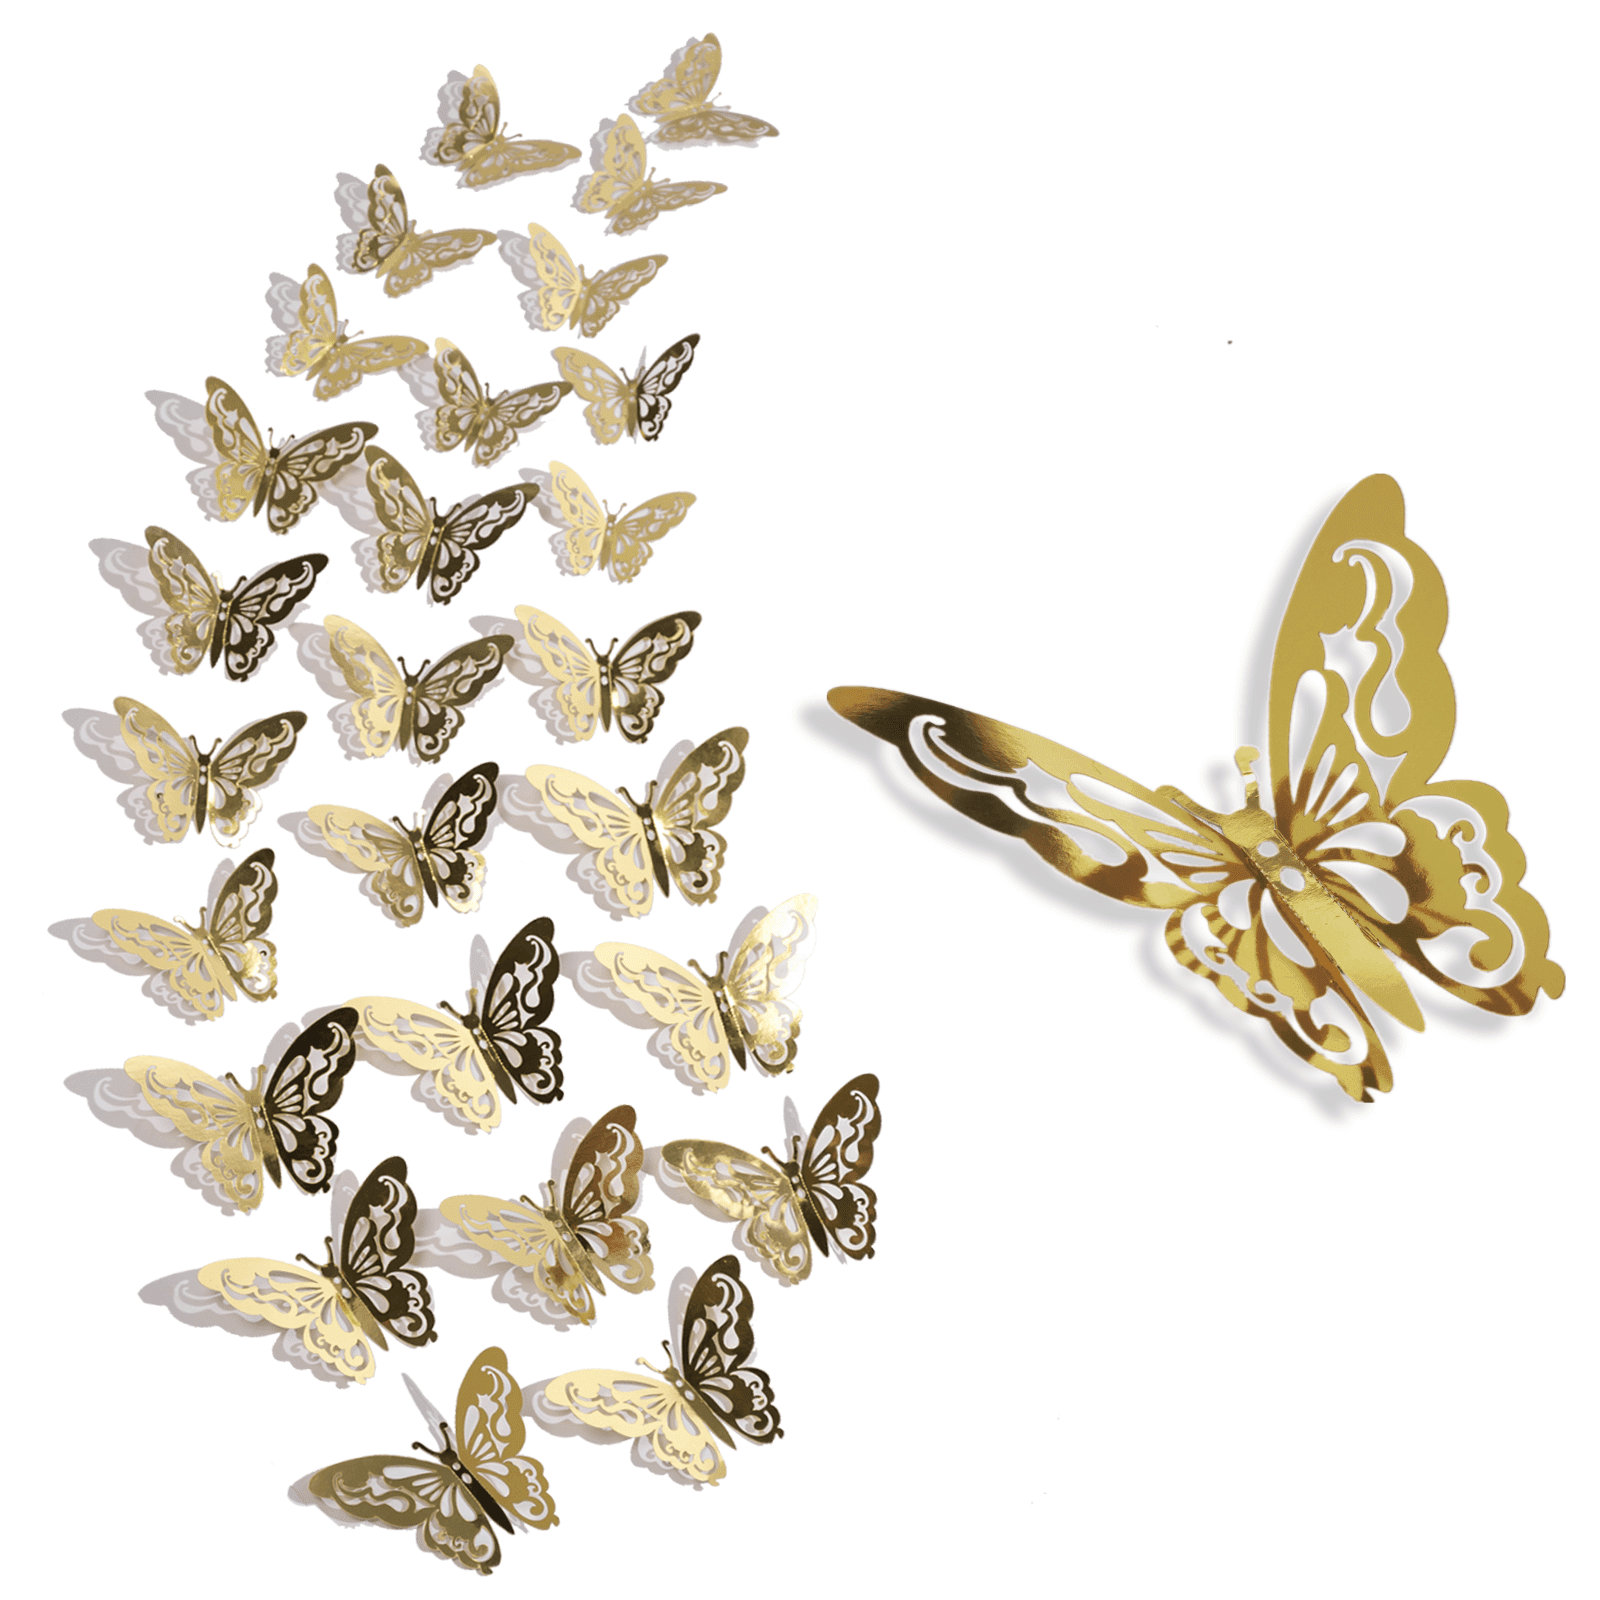 Gold Mirror Butterflies 3D Adhesive Wall Art